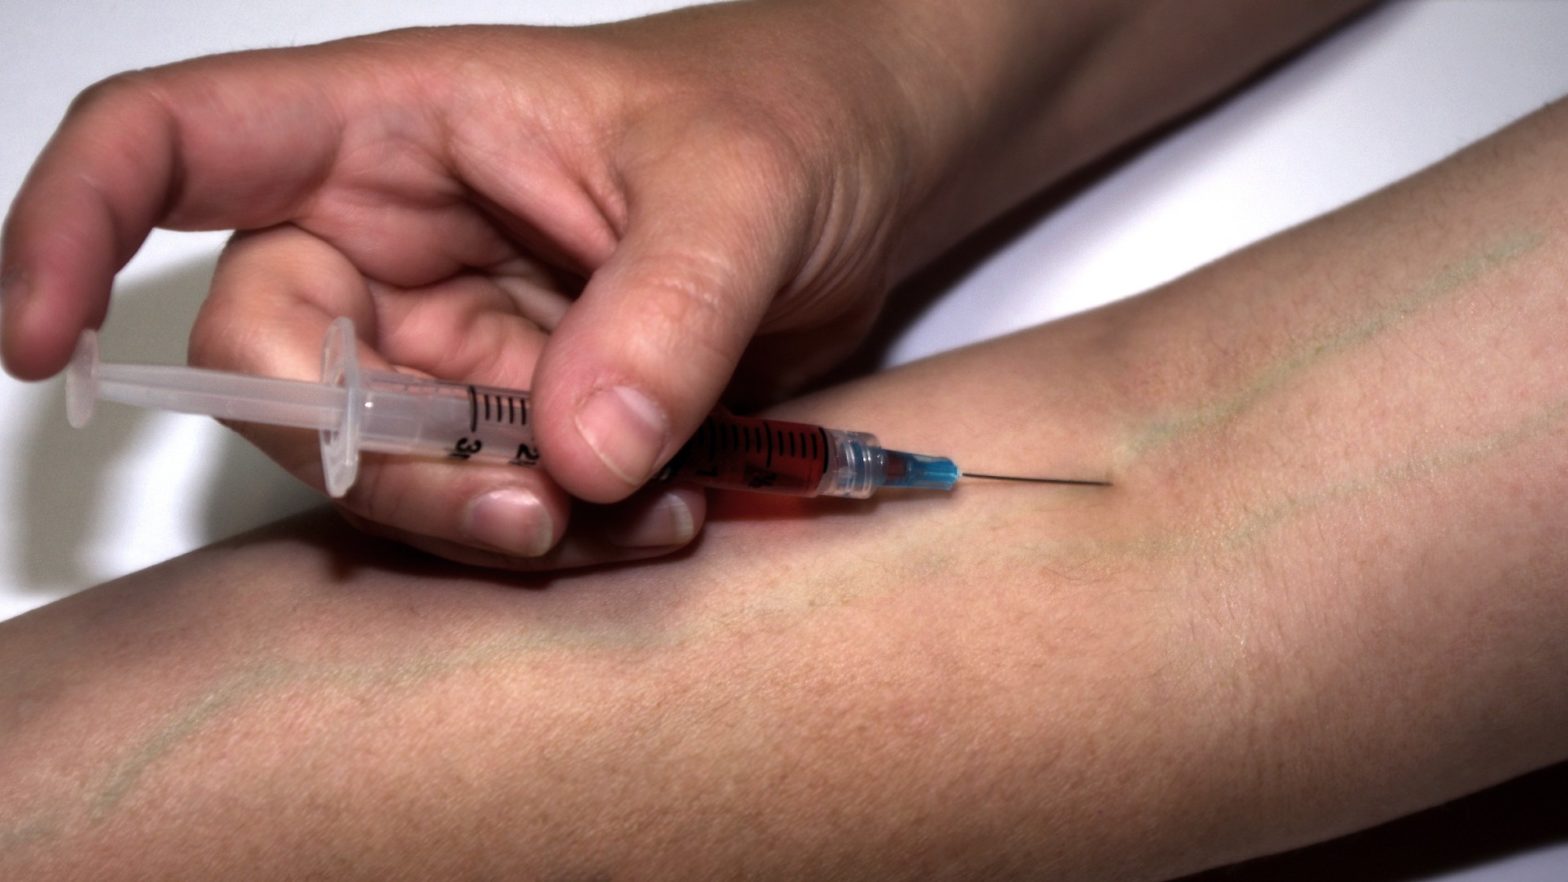 Uma pesoa aplicando a injeção de HCG na veia do braço.